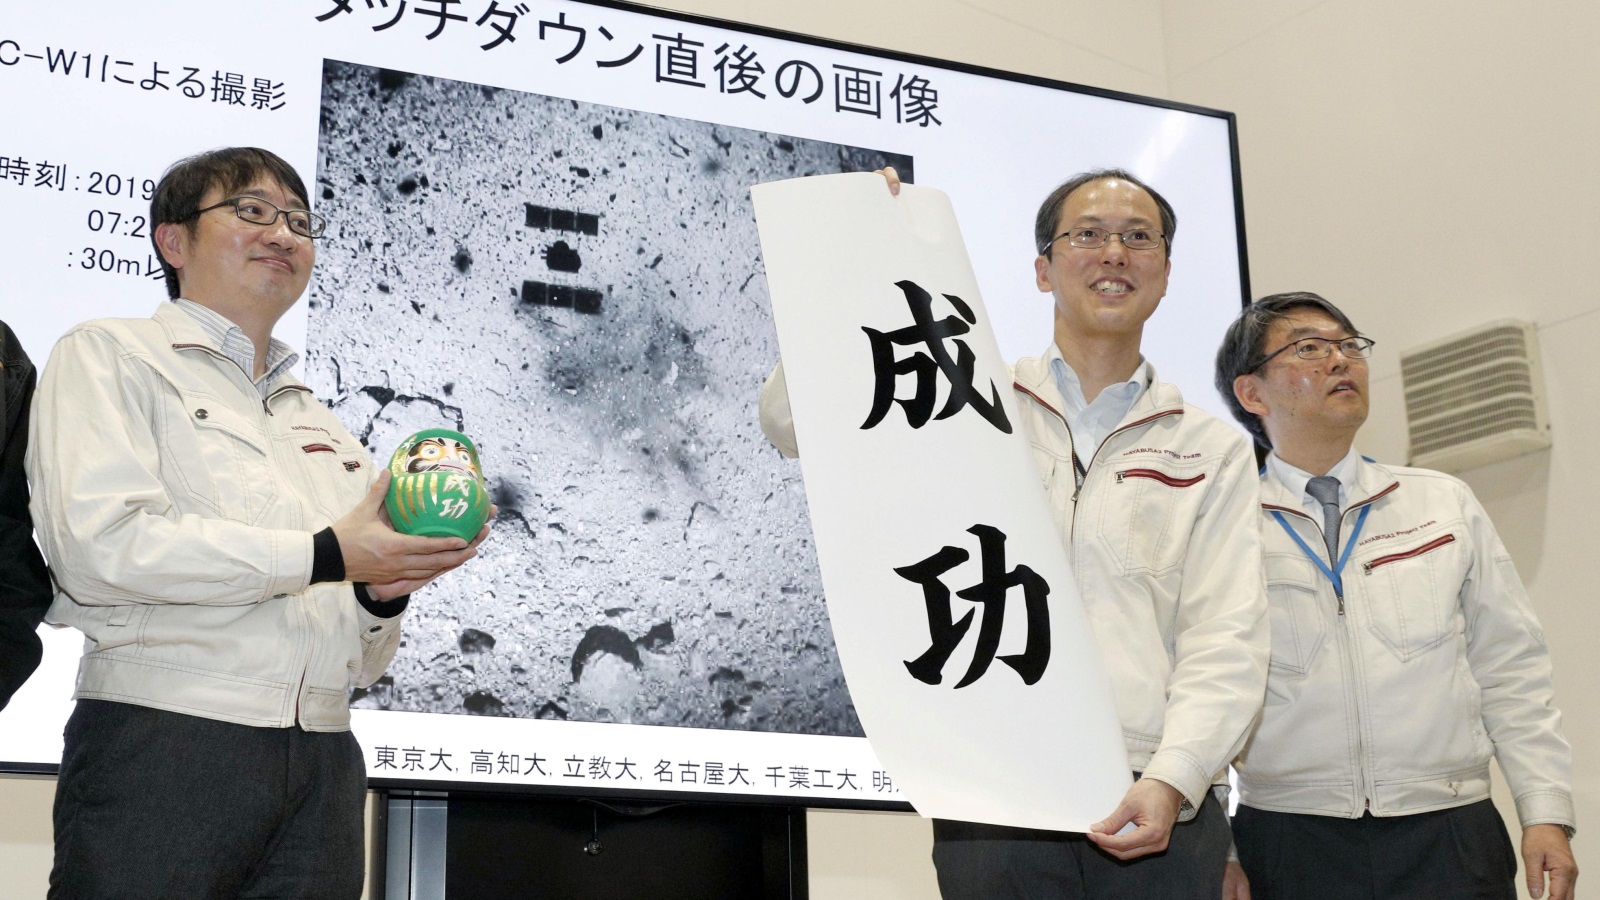 أعضاء من وكالة الفضاء اليابانية يحتفلون بنجاح مهمة هايابوسا 2 (رويترز)